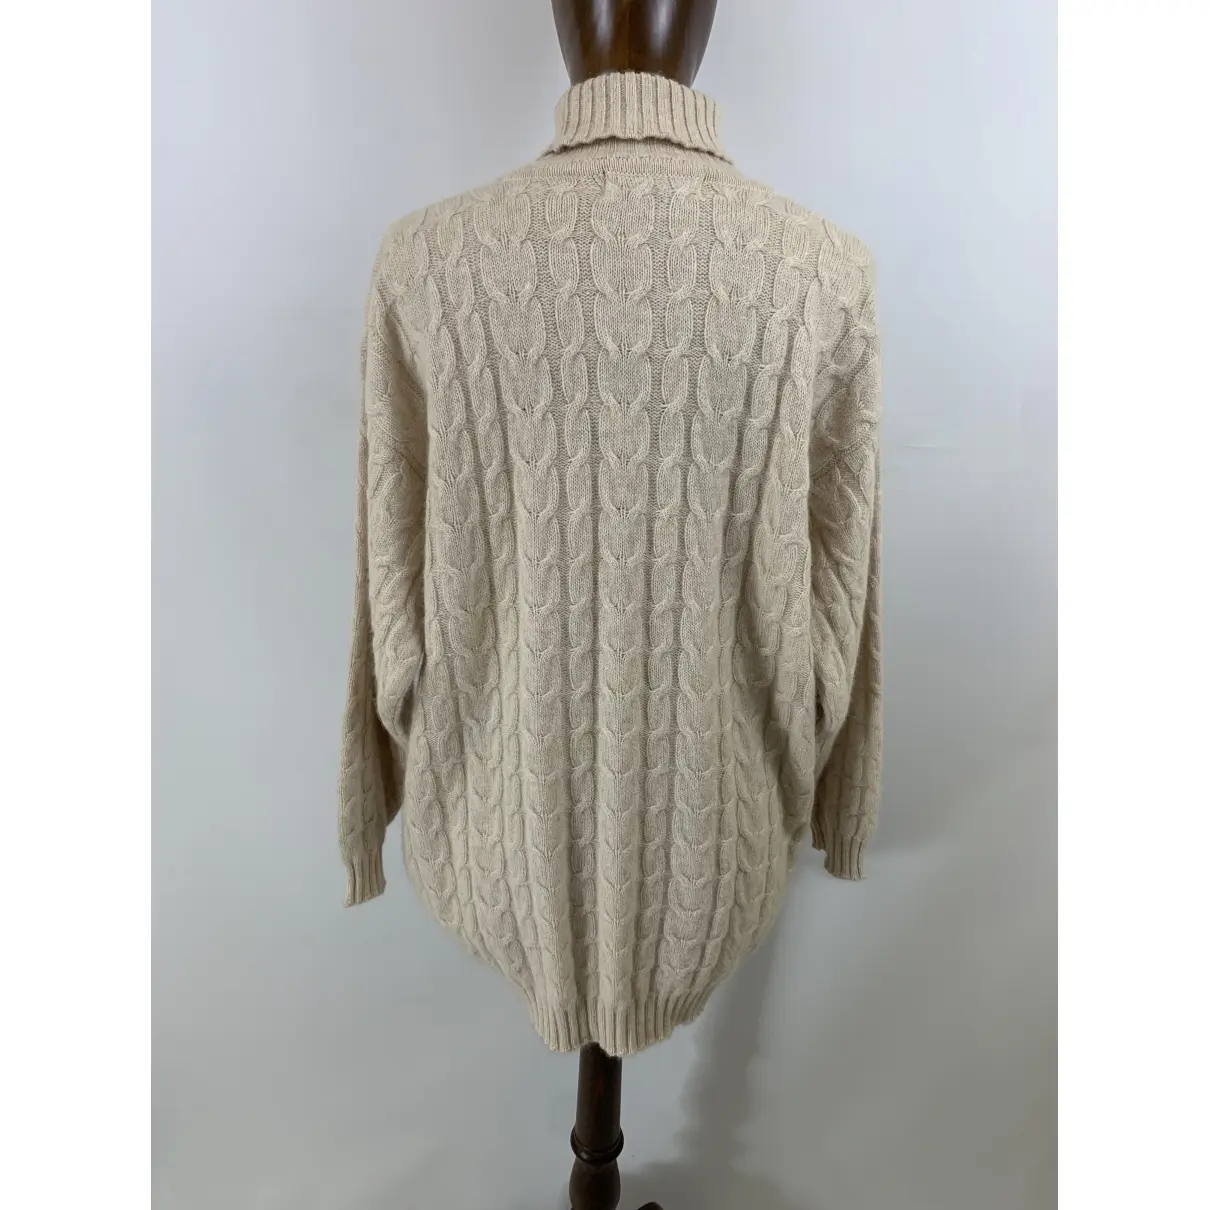 Burberry Wool jumper for sale - Vintage